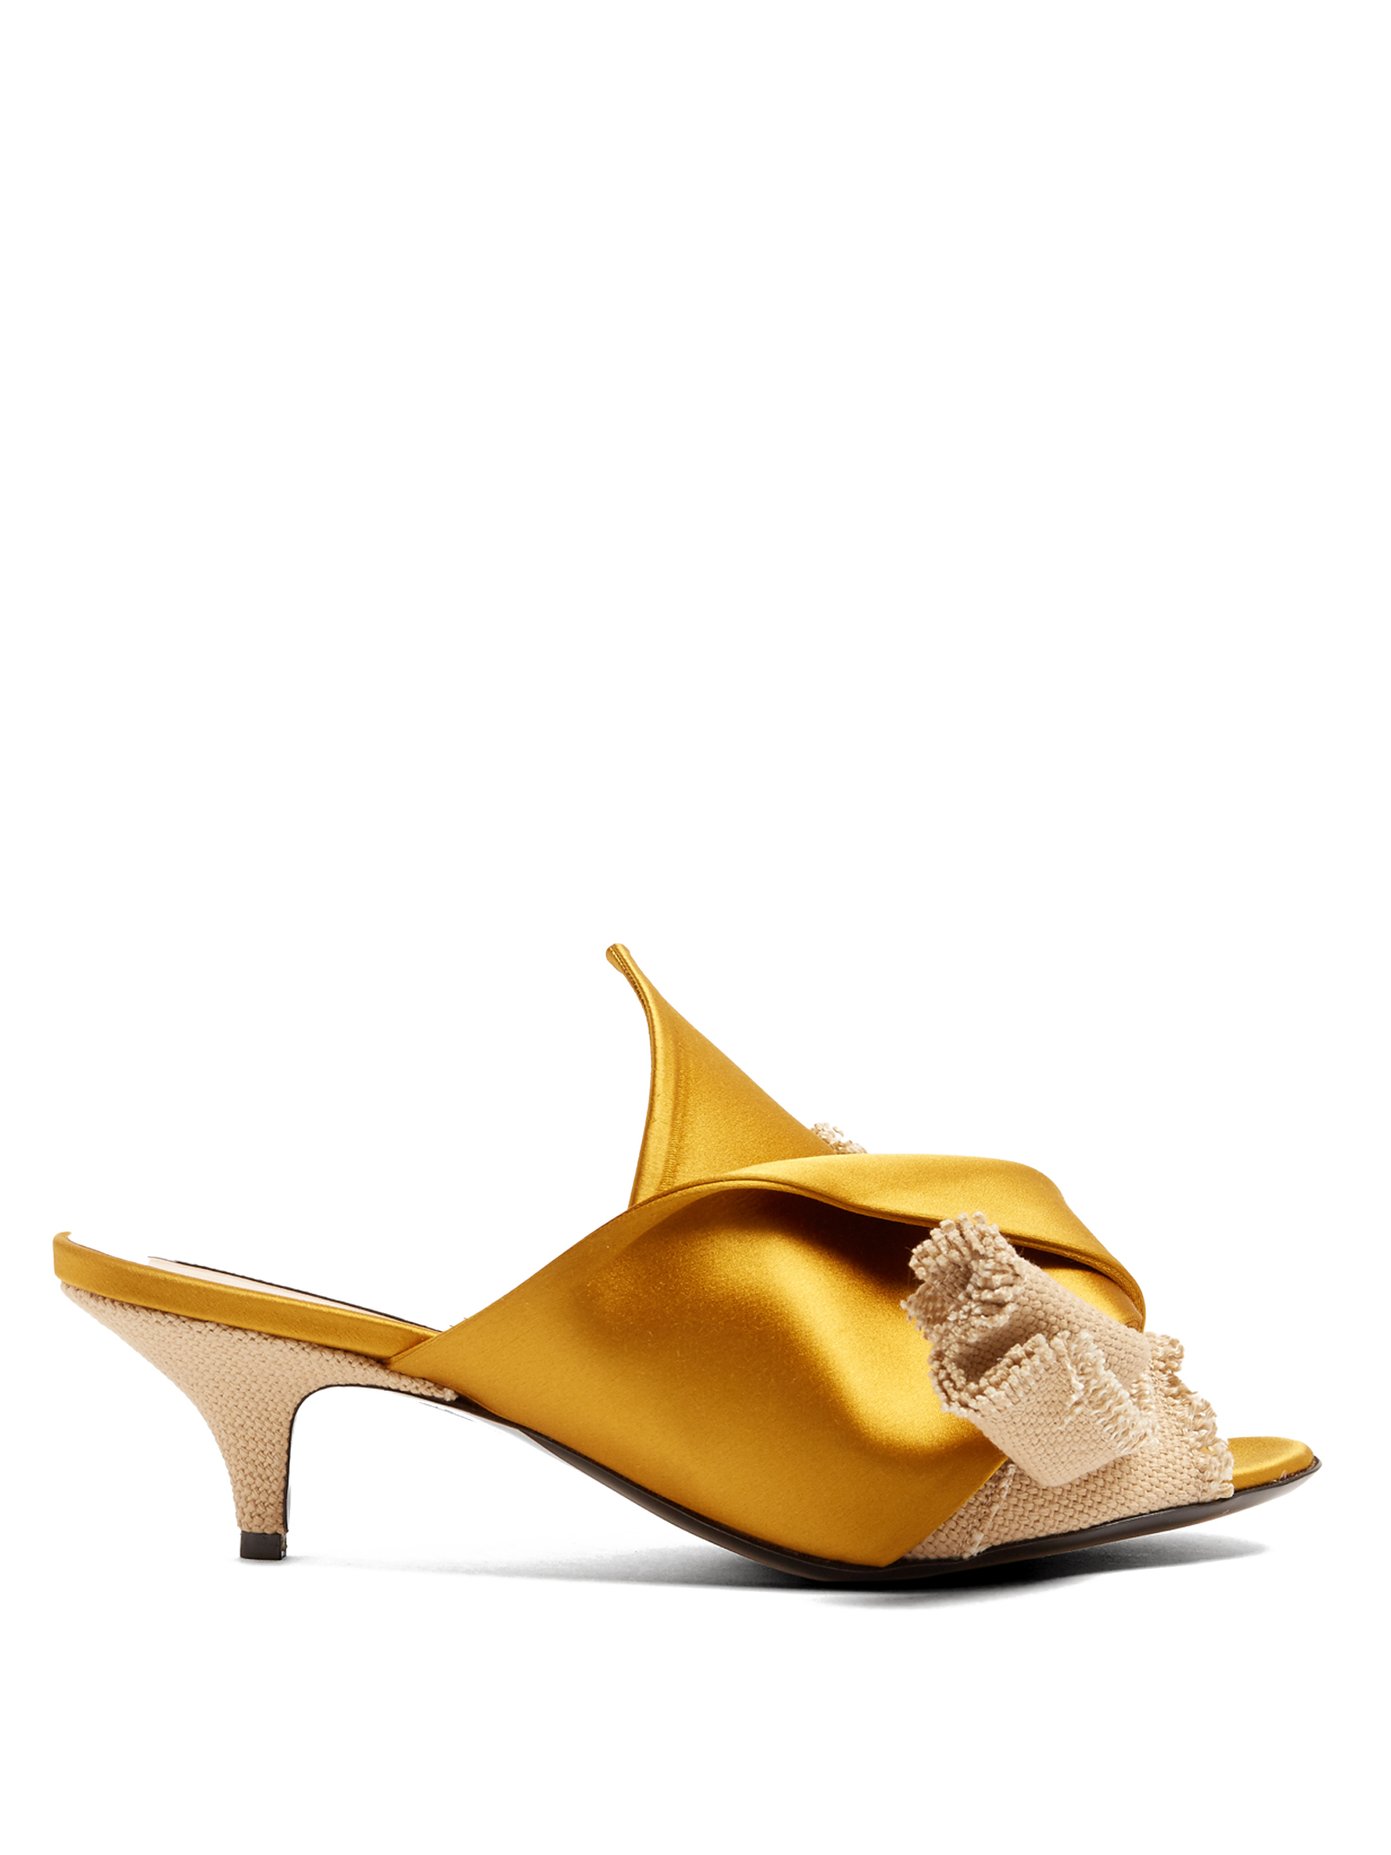 mustard yellow kitten heels